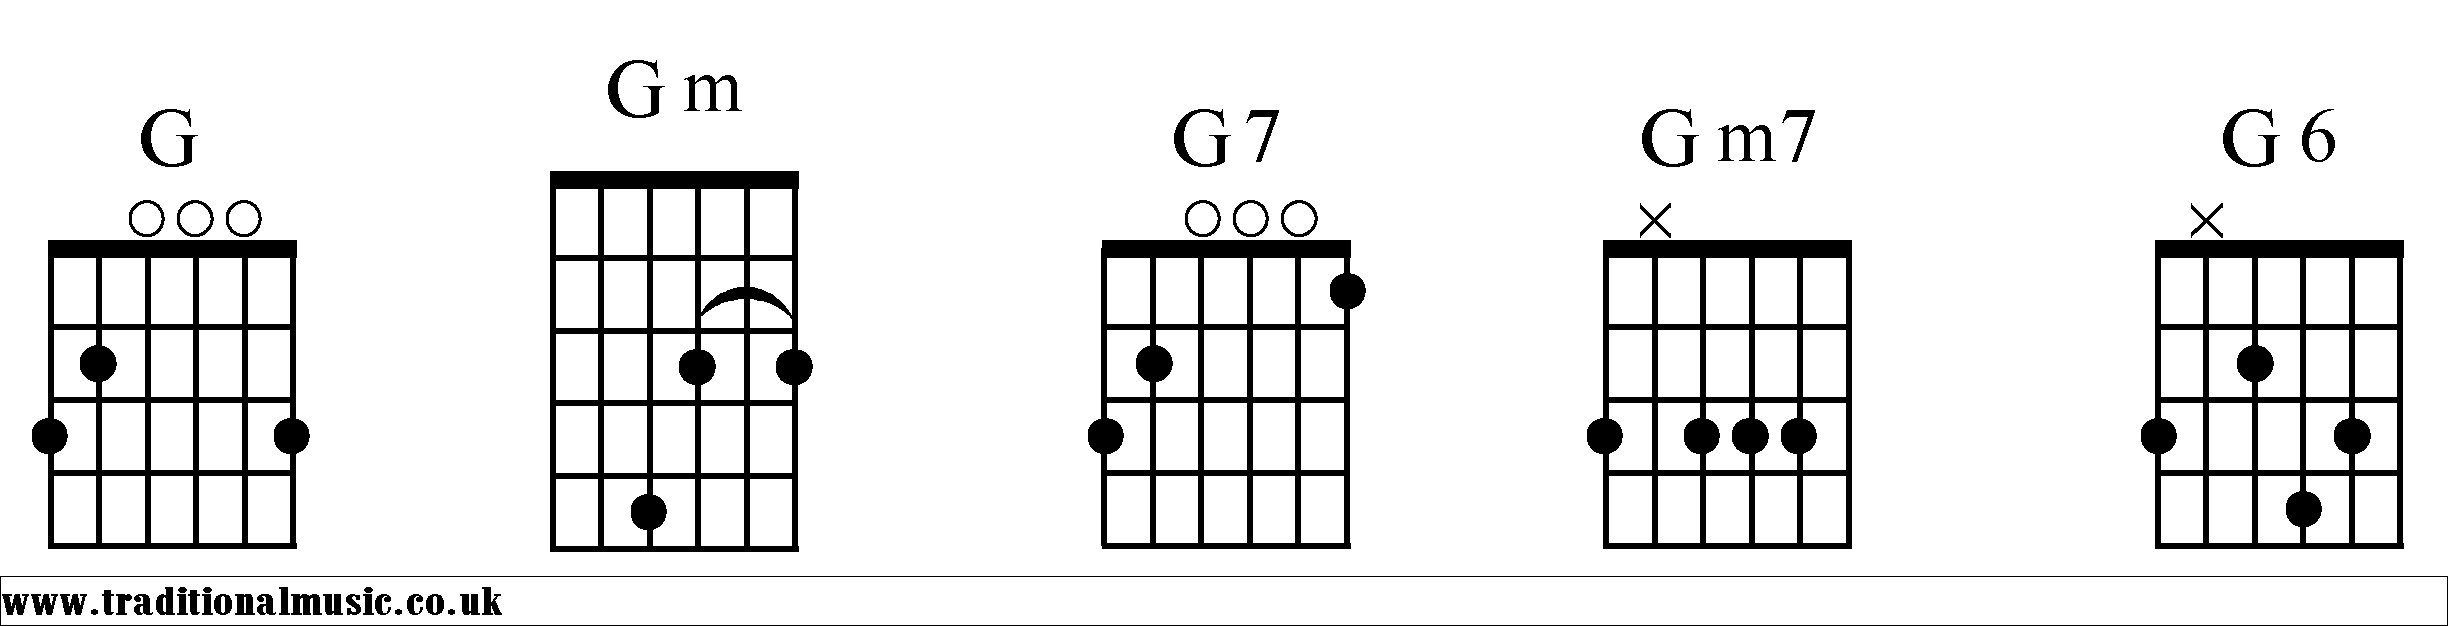 G Chords diagrams Guitar 1